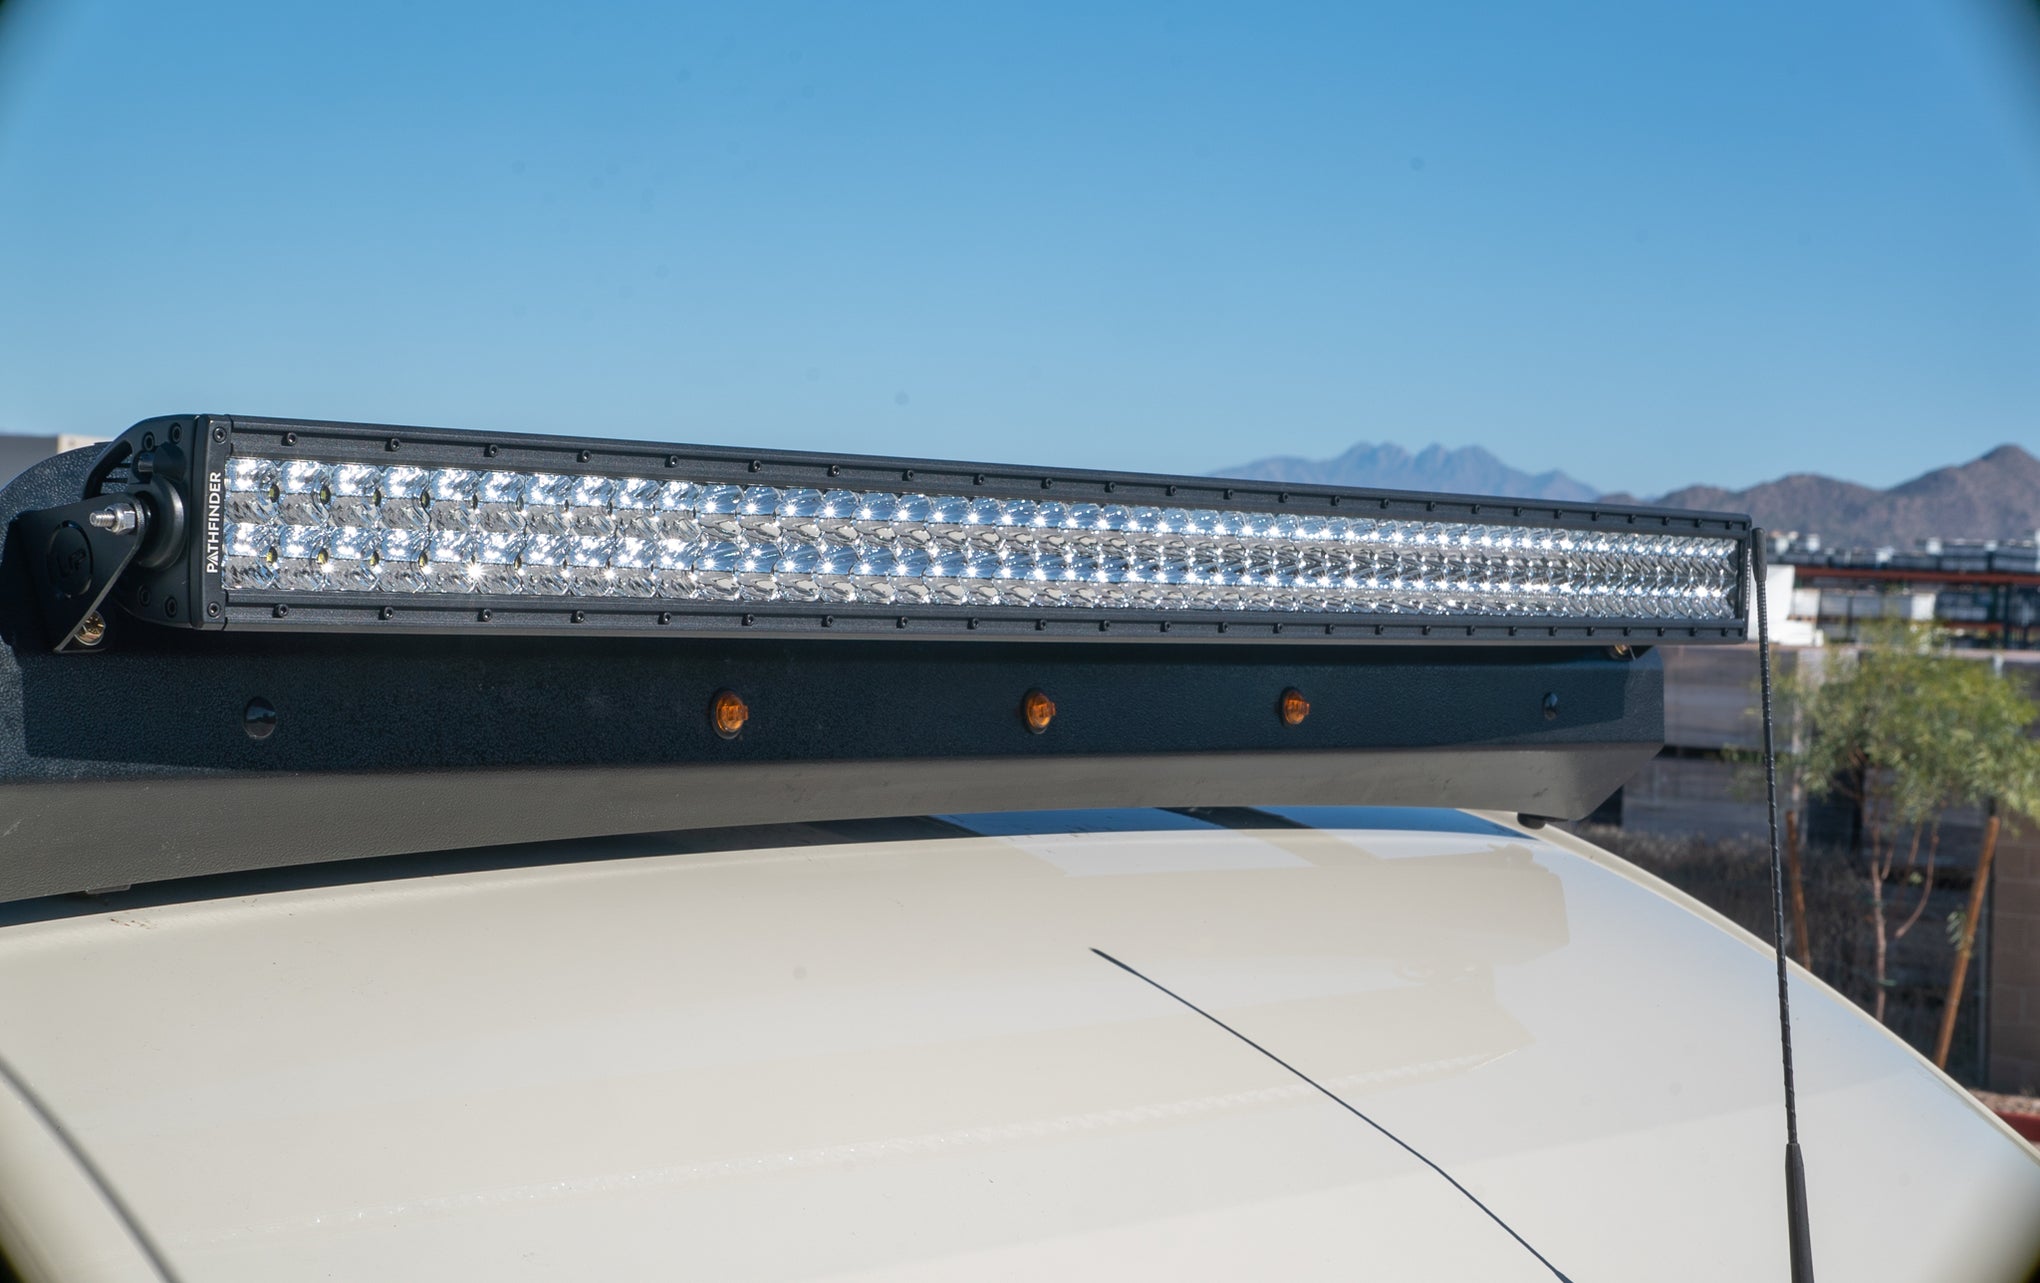 Pathfinder 50" Curved LED Light Bar